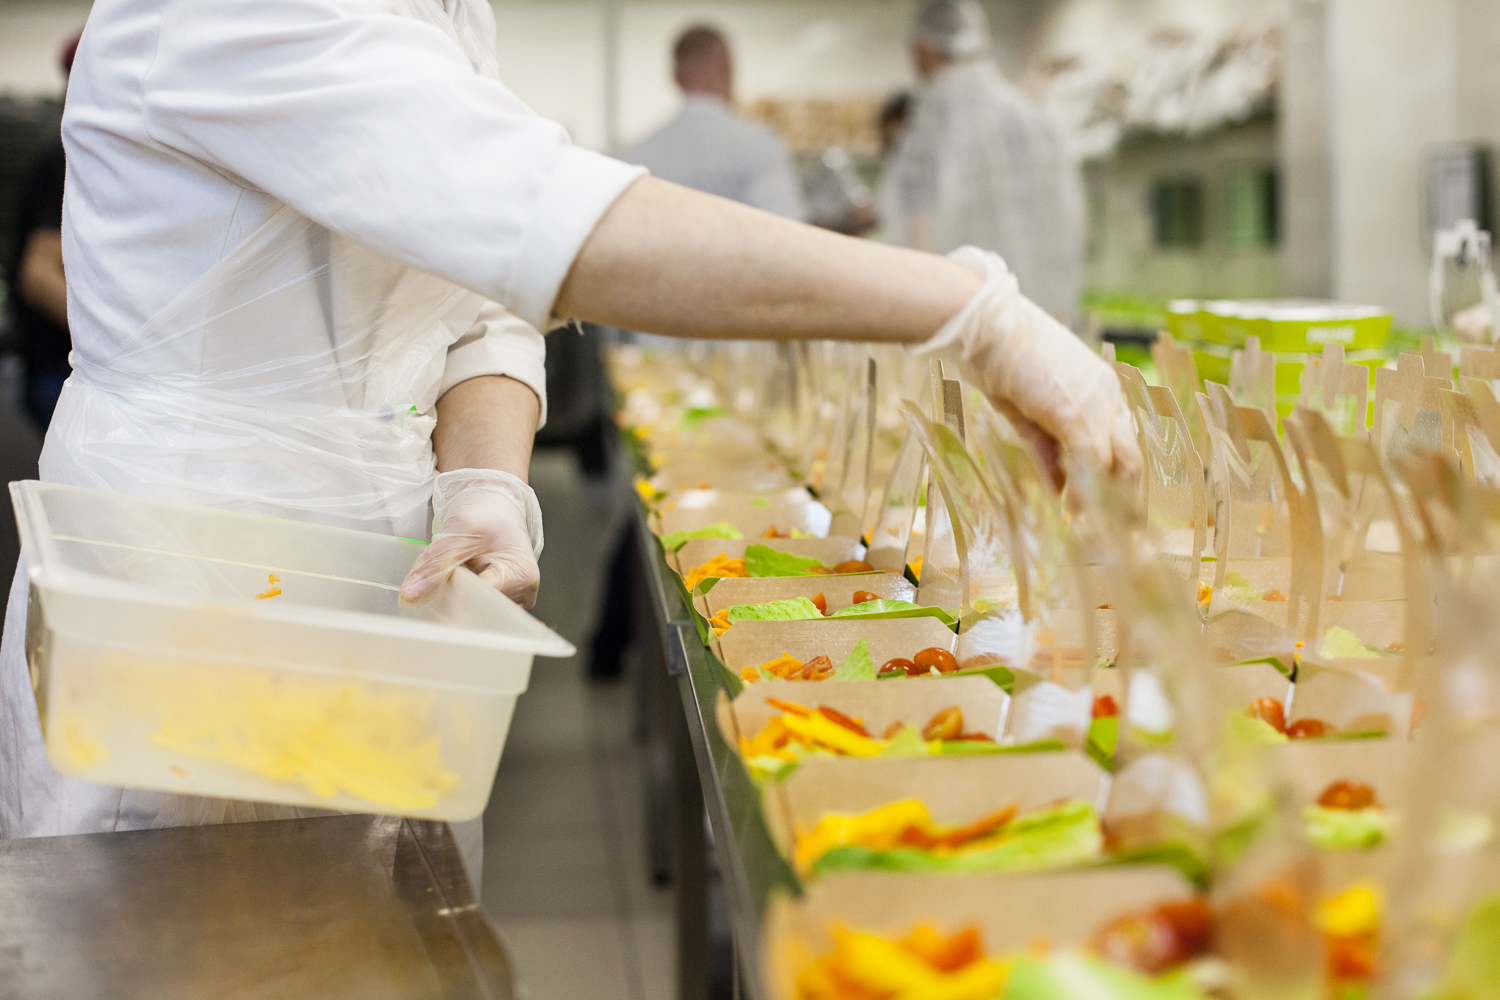 Продукция ПРК отправляется в кафе ежедневно, чтобы гости могли зарядиться энергией свежих блюд